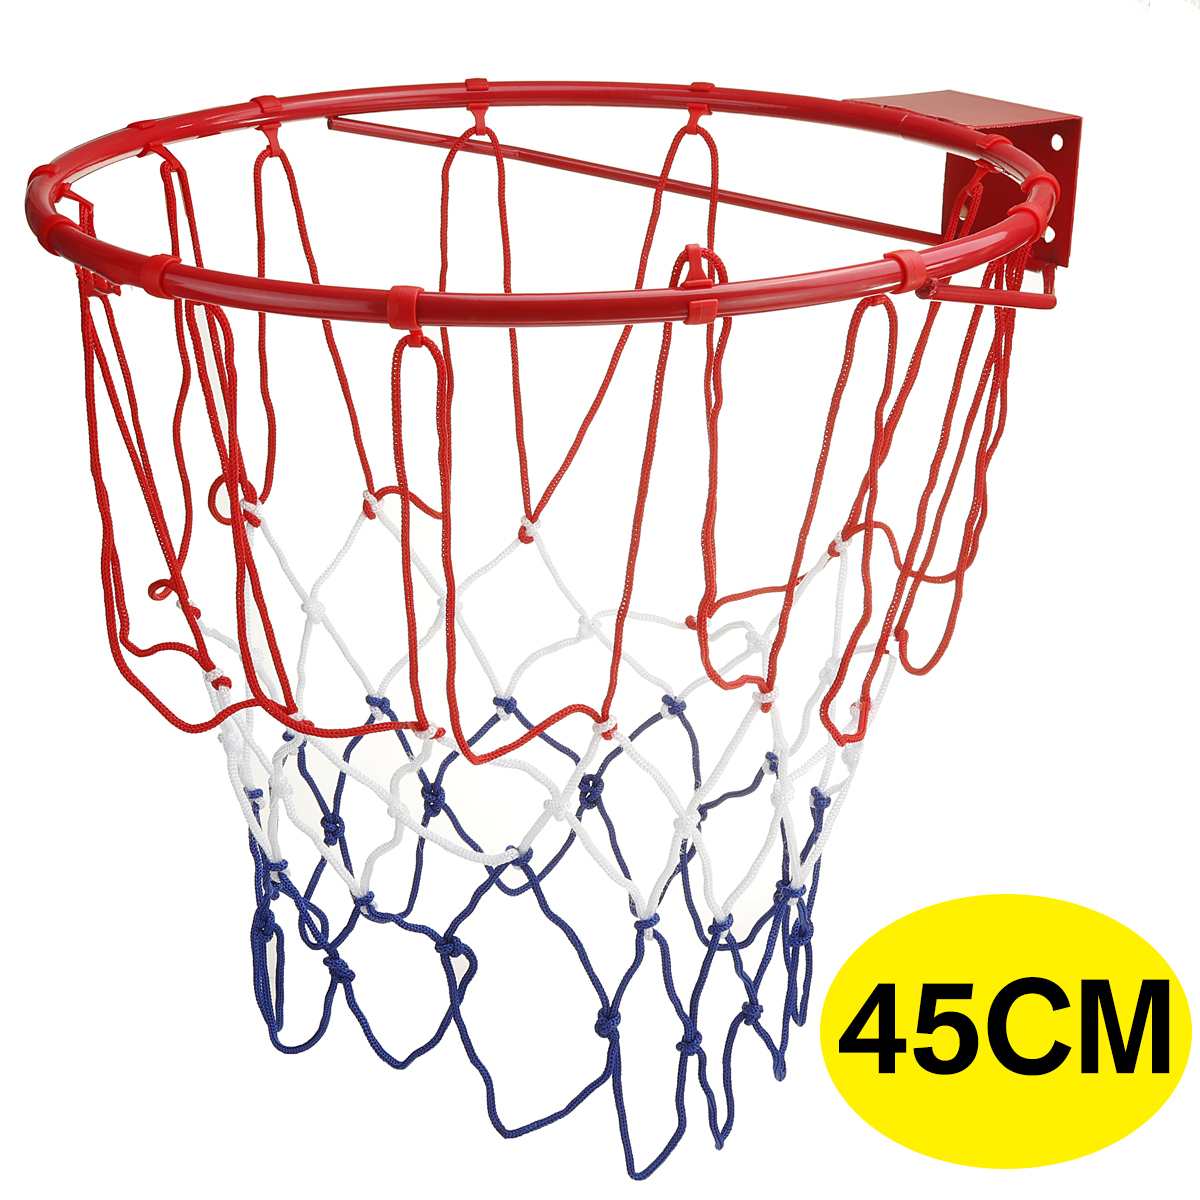 รายละเอียดเพิ่มเติมเกี่ยวกับ Basketball Hoop ห่วงบาสเกตบอล แขวนติดผนังขอบโลหะ ขนาด 45 Cm รุ่น ห่วงบาสเกตบอลแขวนติดผนังขอบโลหะเป้าหมายกำไรสุทธิสินค้ากีฬา 45ซม Basketball Hoop โครงโลหะติดผนัง(รวมเฉพาะขอบและสุทธิ)